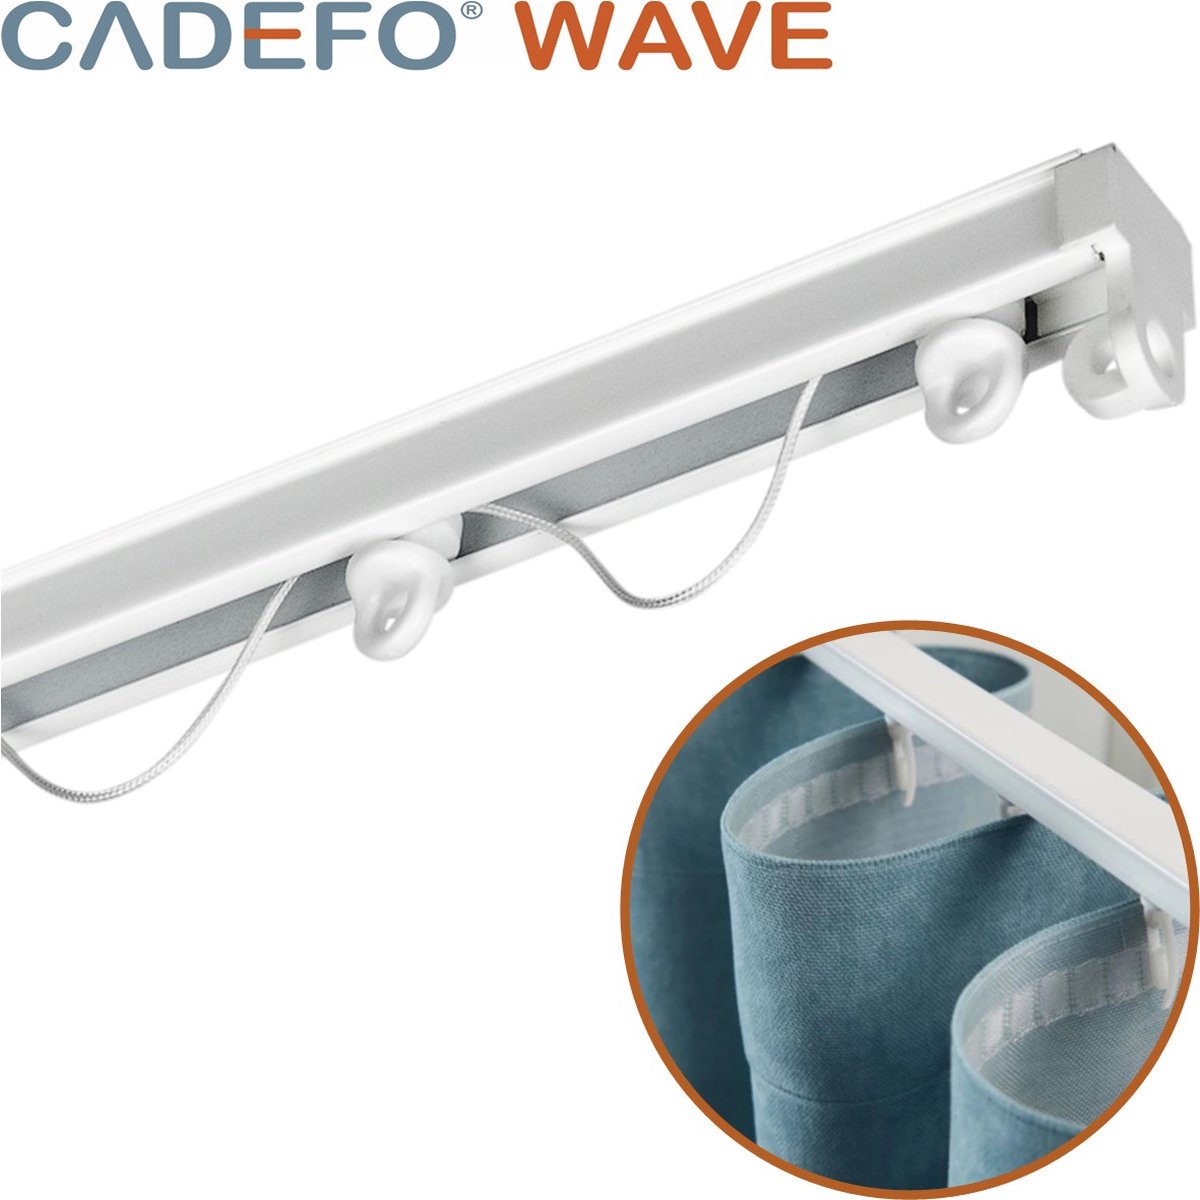 CADEFO WAVE (551 - 600 cm) Gordijnrails - Compleet op maat! - UIT 1 STUK - Leverbaar tot 6 meter - Plafondbevestiging - Lengte 585 cm